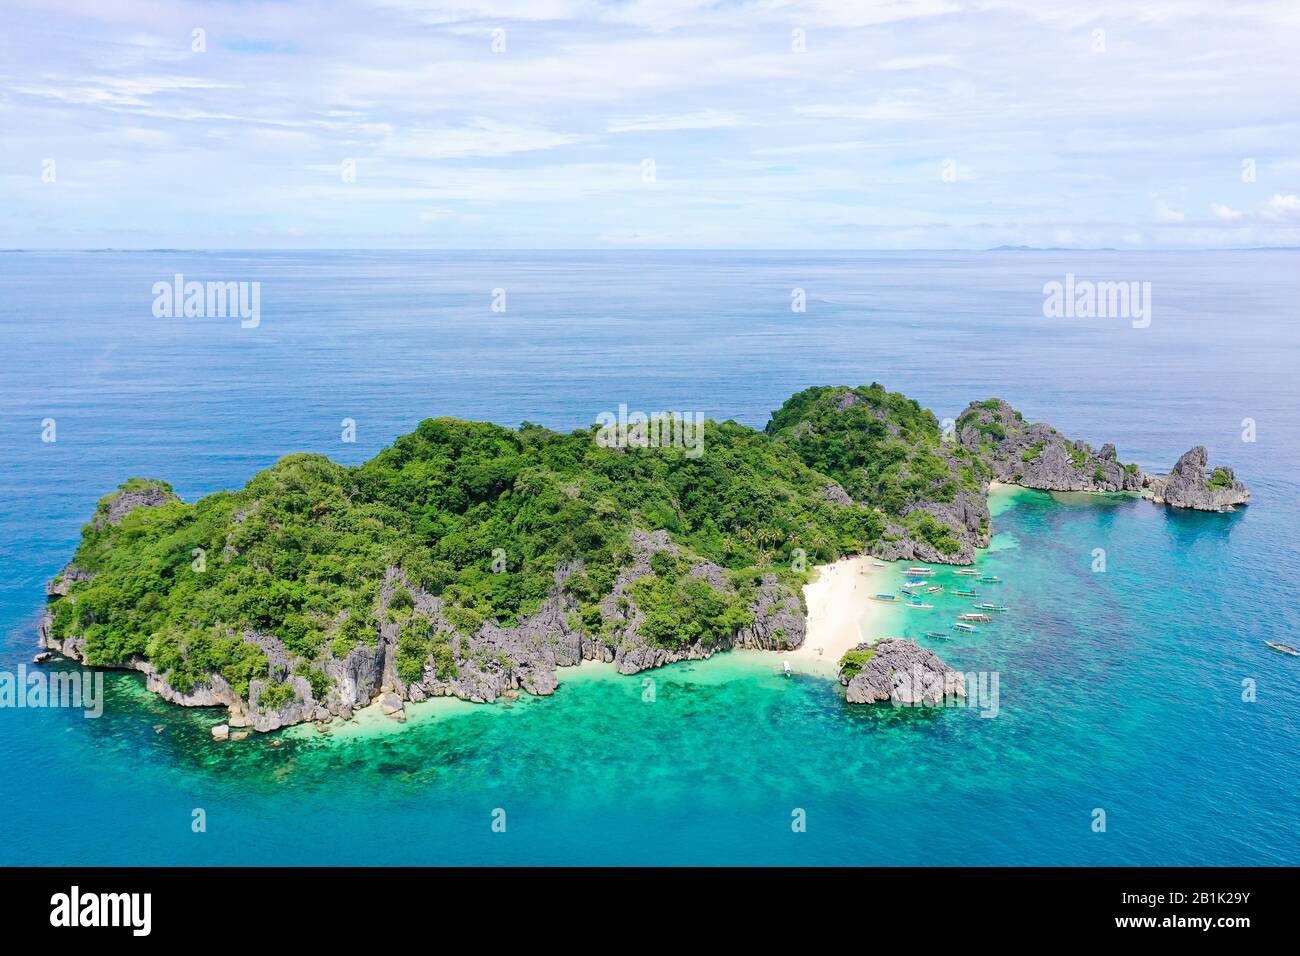 Tropische Landschaft: Matukad Insel mit schönem Strand und Touristen durch türkisfarbenes Wasser Blick von oben. Karamoische Inseln, Philippinen. Sommer- und Reiseurlaubskonzept. Boote und Touristen am Strand. Stockfoto